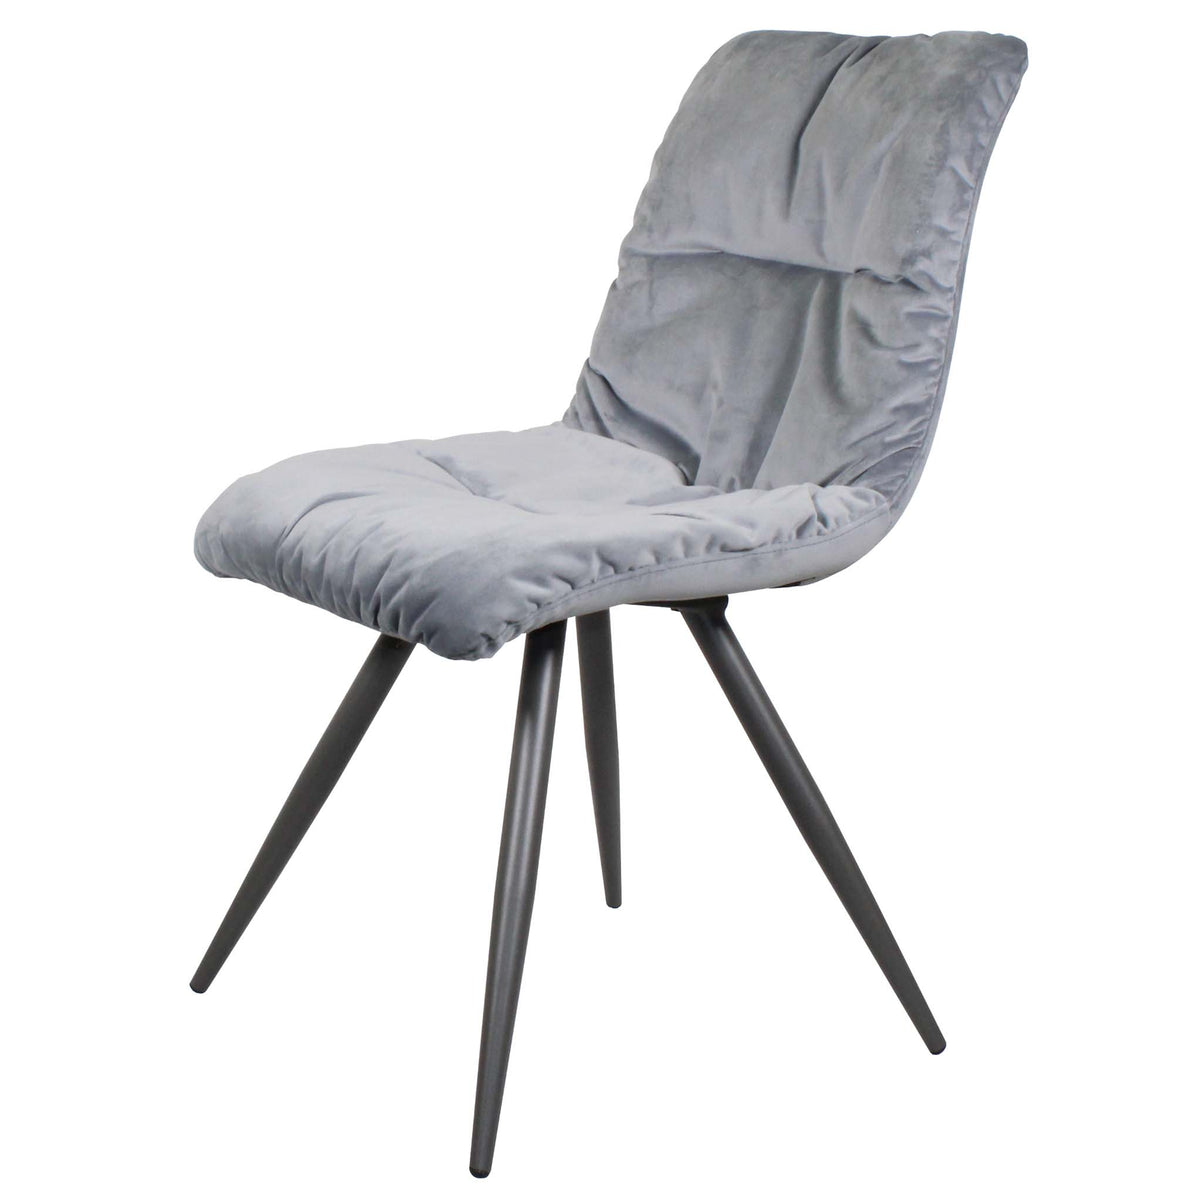 Light Grey Addison Velvet Chair from Roseland Furniture